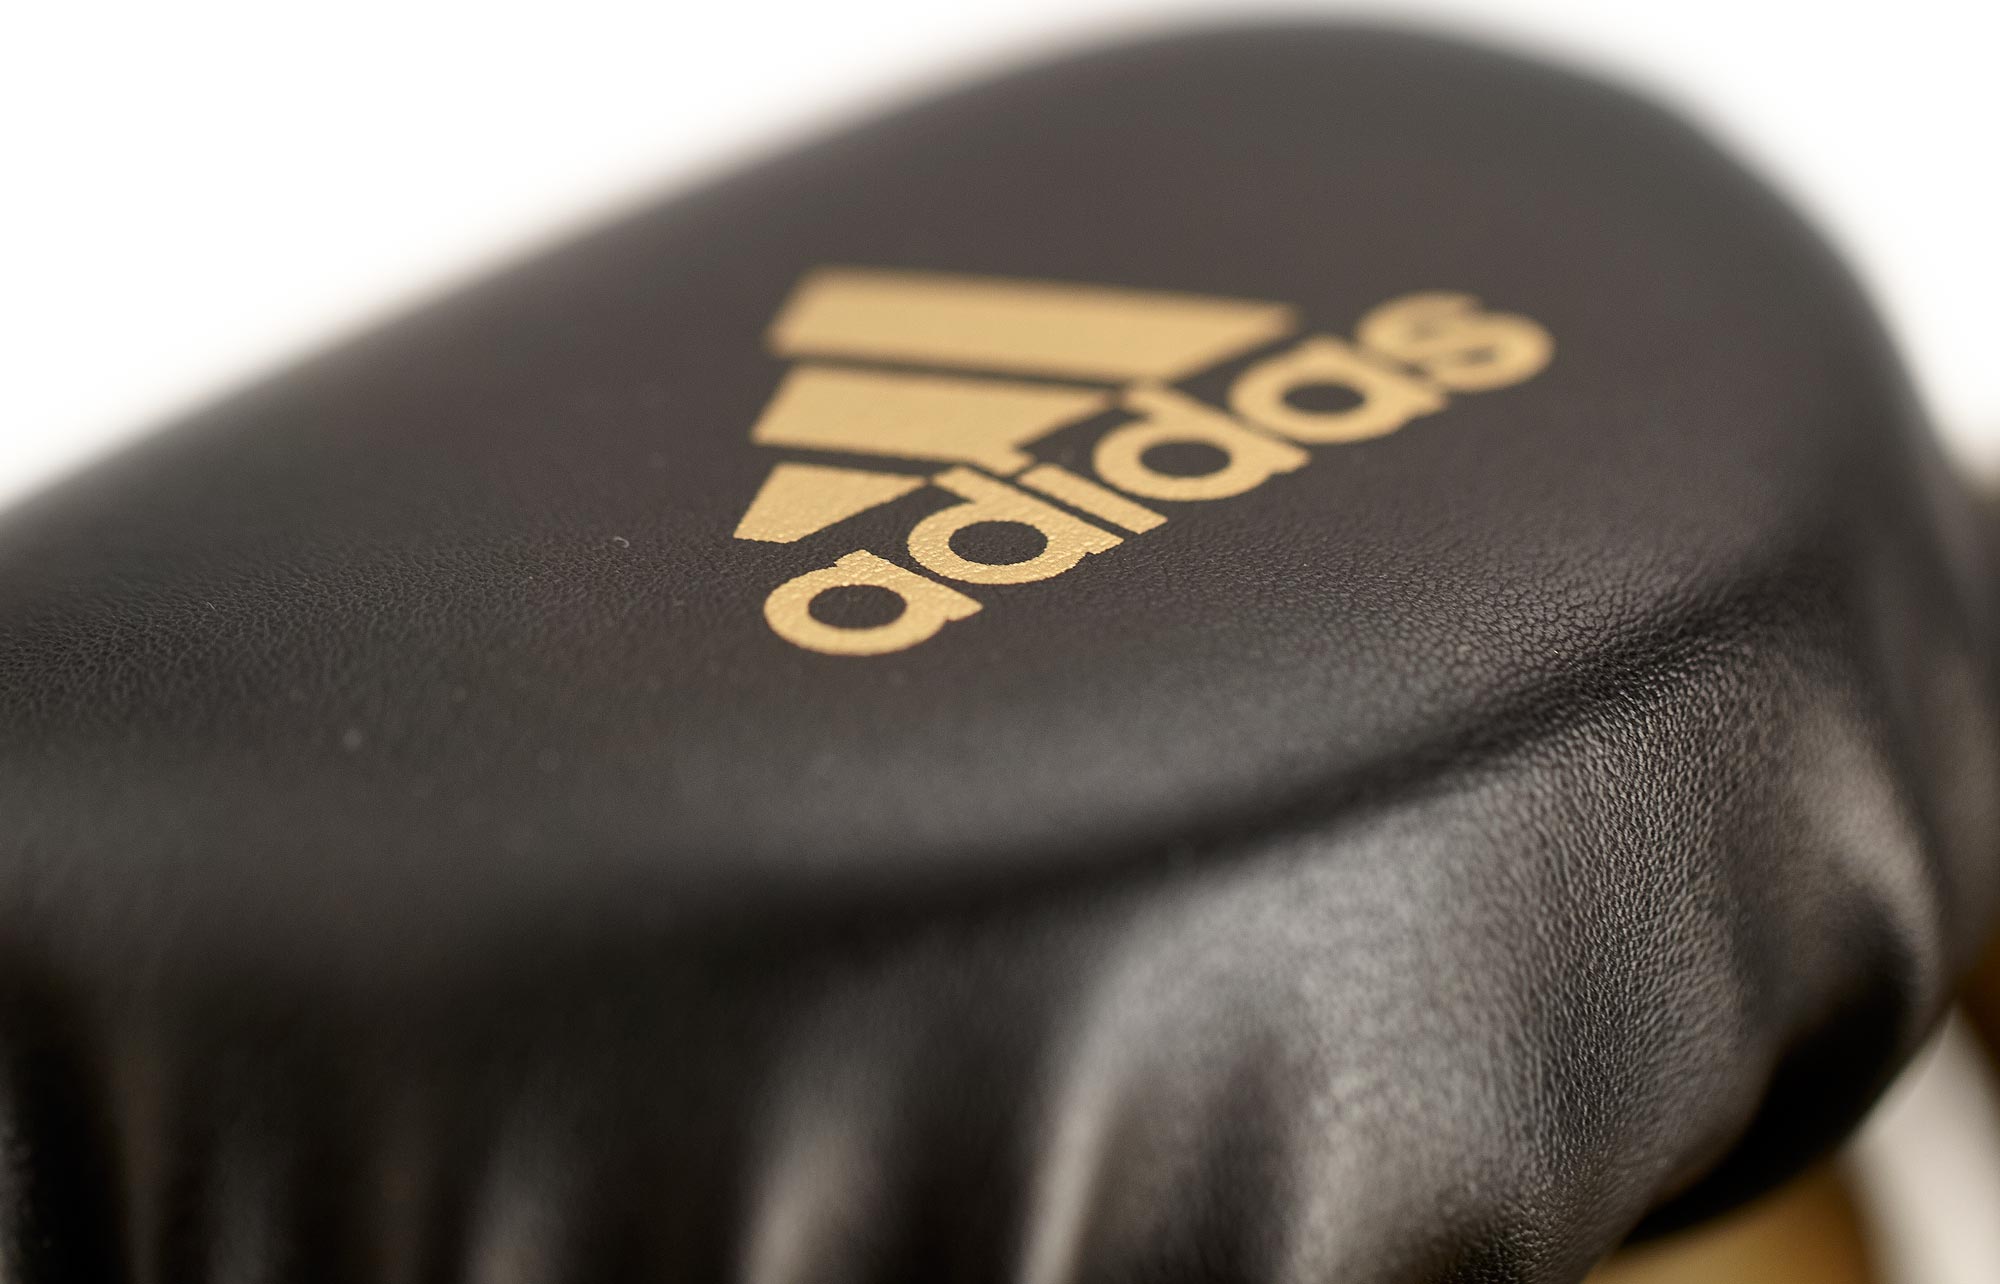 adidas boxing gloves SPEED TILT 350V pro SPD350VTG black/gold